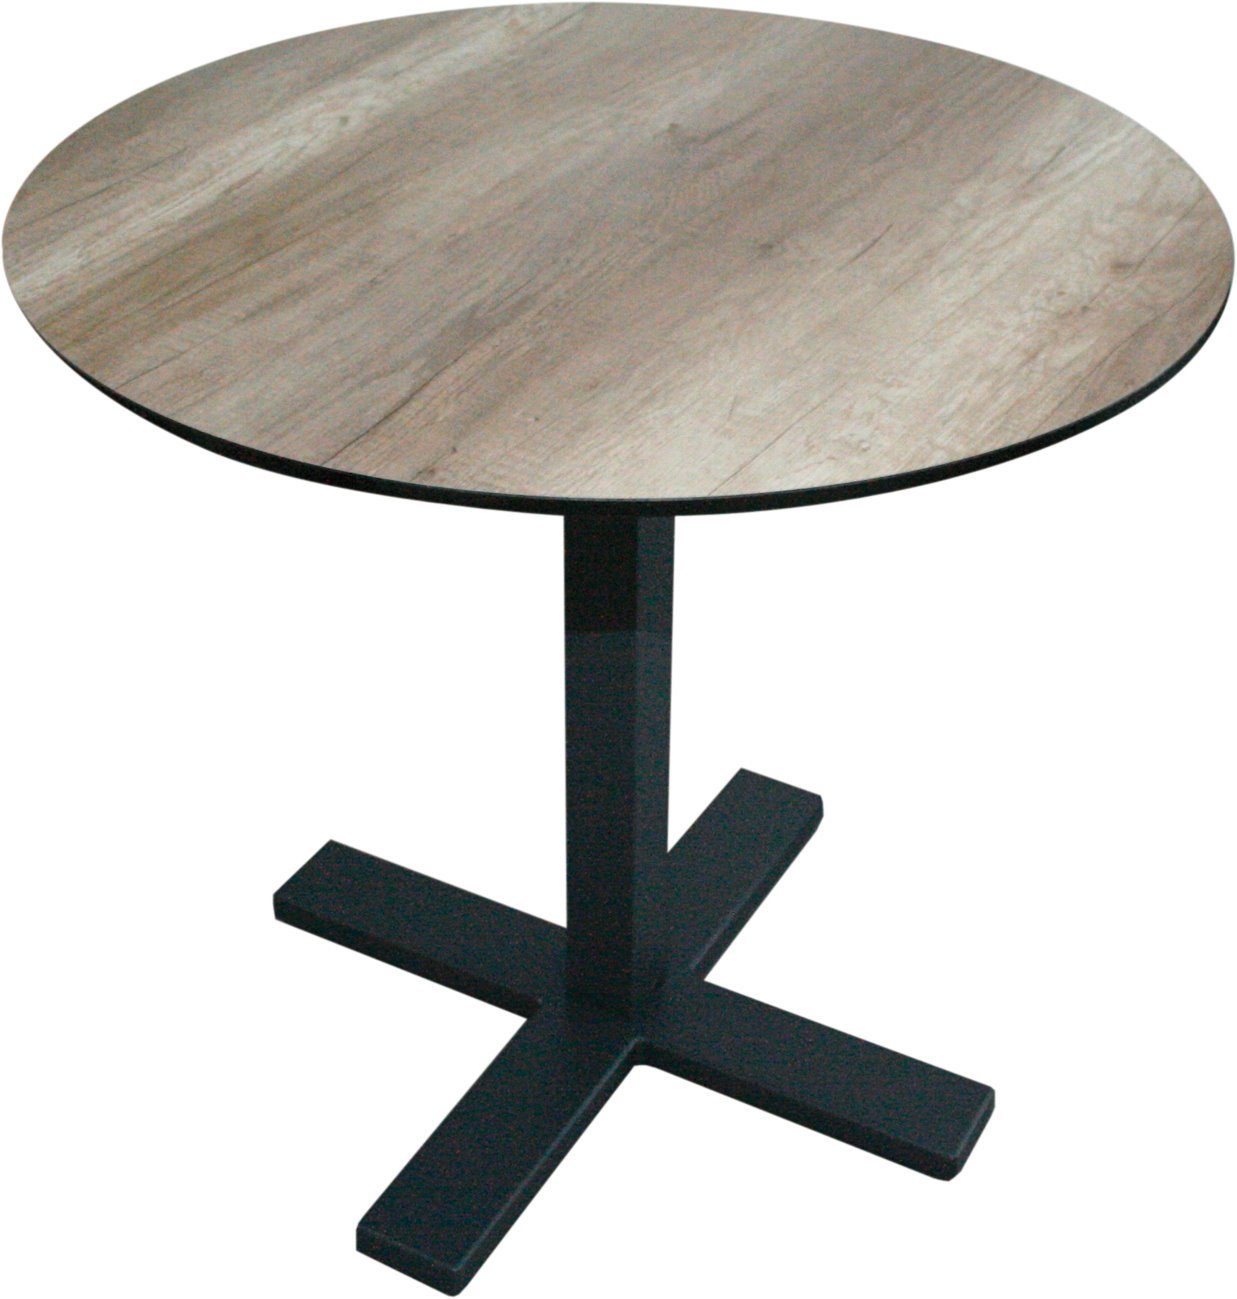 Tisch dynamic24 (4-Kant Beine Gastro anthrazit 4 Gartentisch, eckig) Bistro Tischgestell EASY